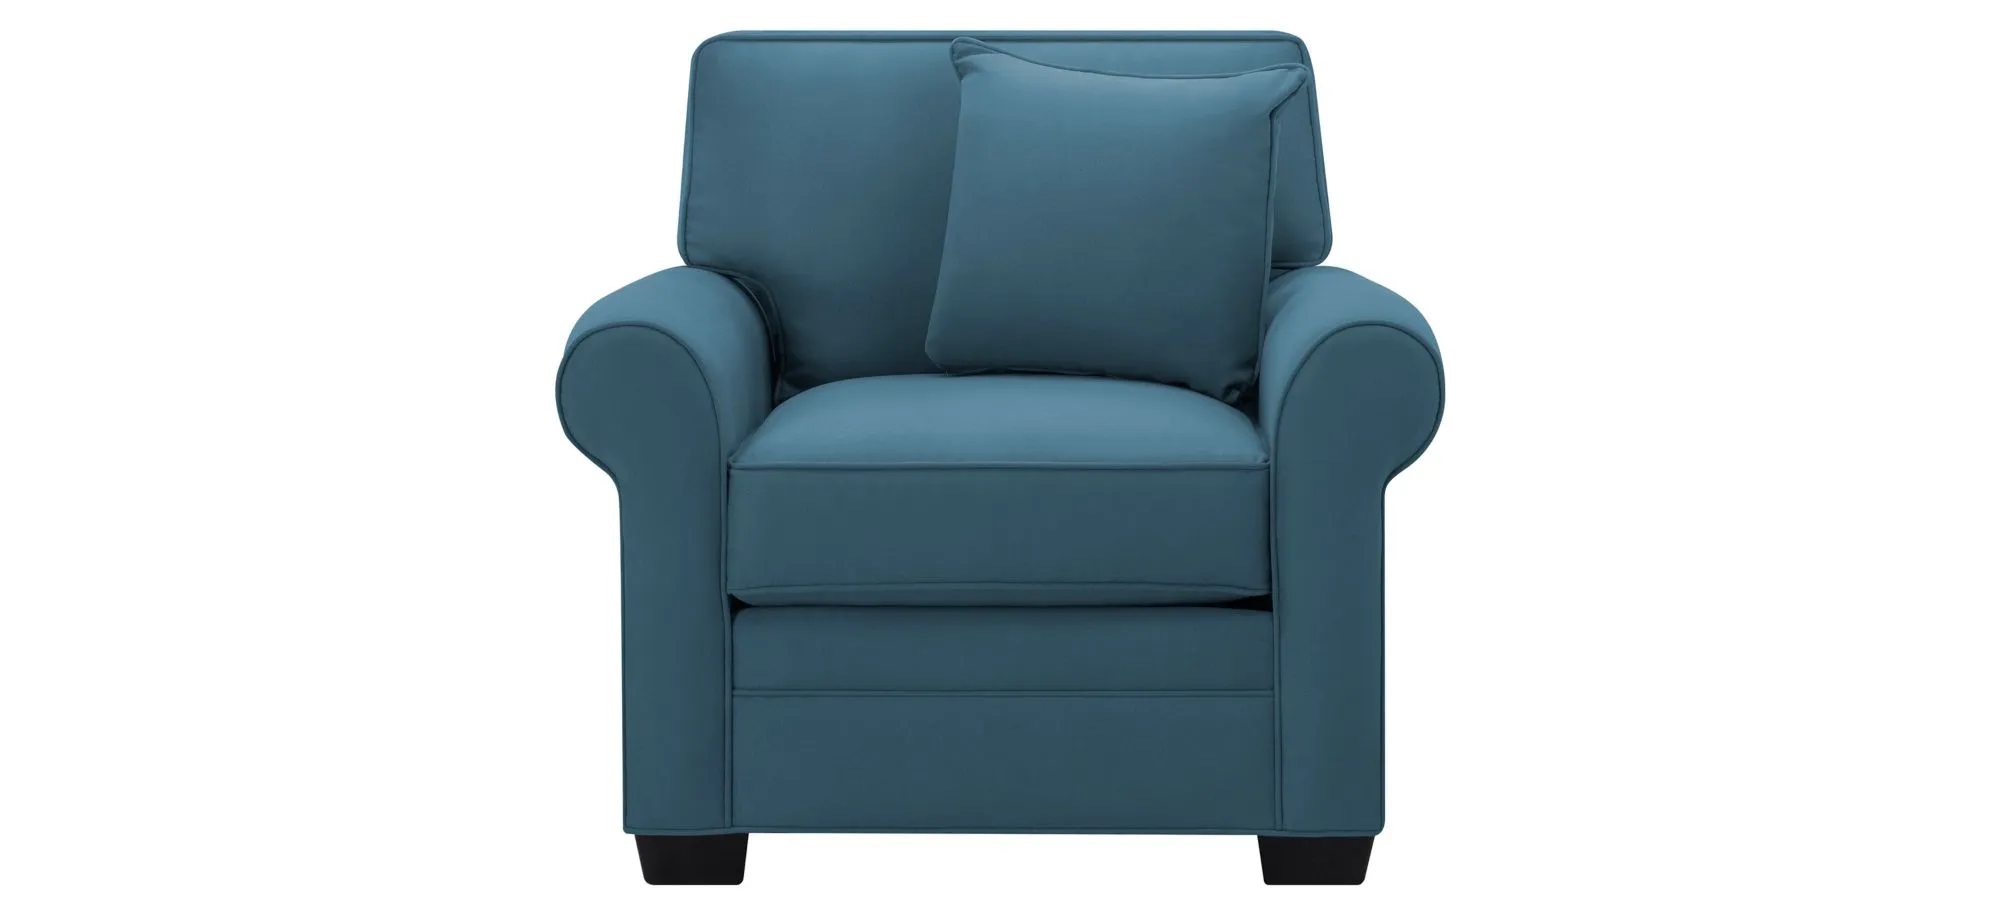 Glendora Chair in Suede So Soft Indigo by H.M. Richards